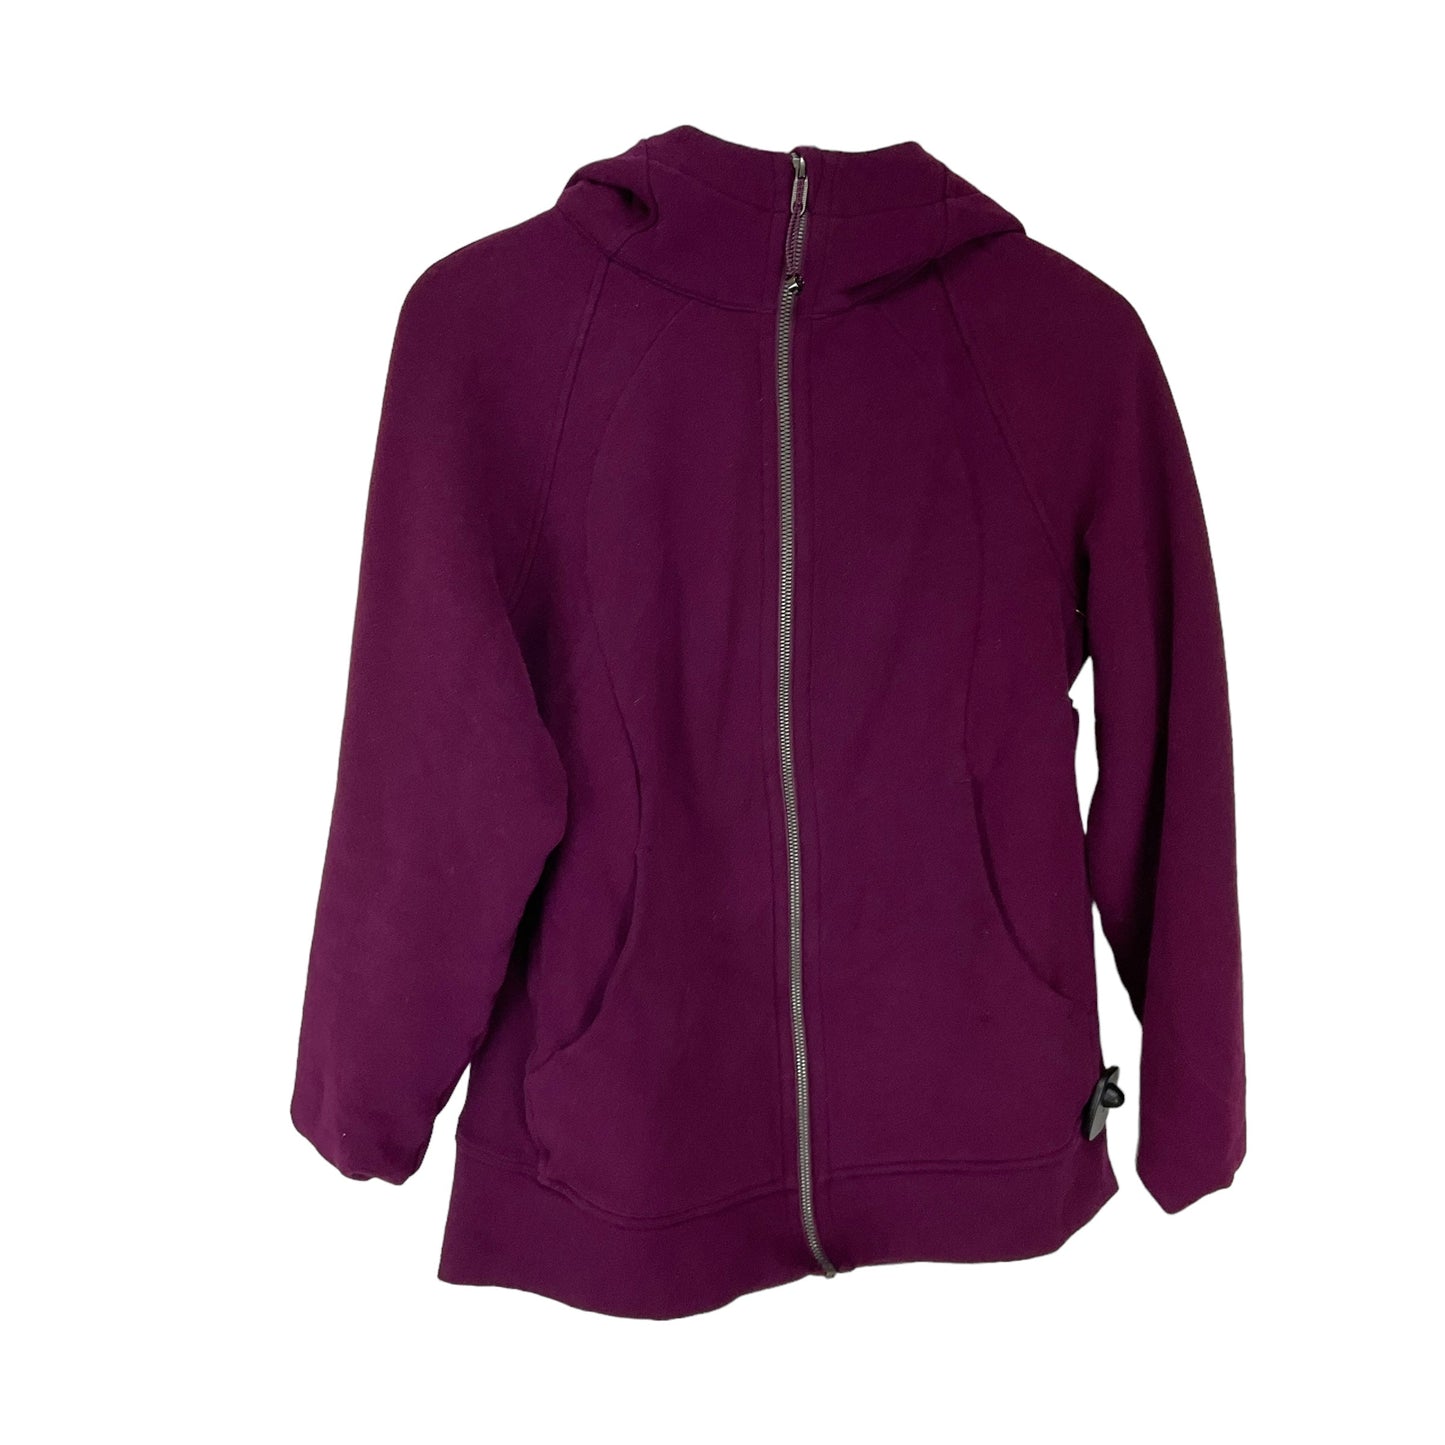 Purple Athletic Jacket Lululemon, Size 12